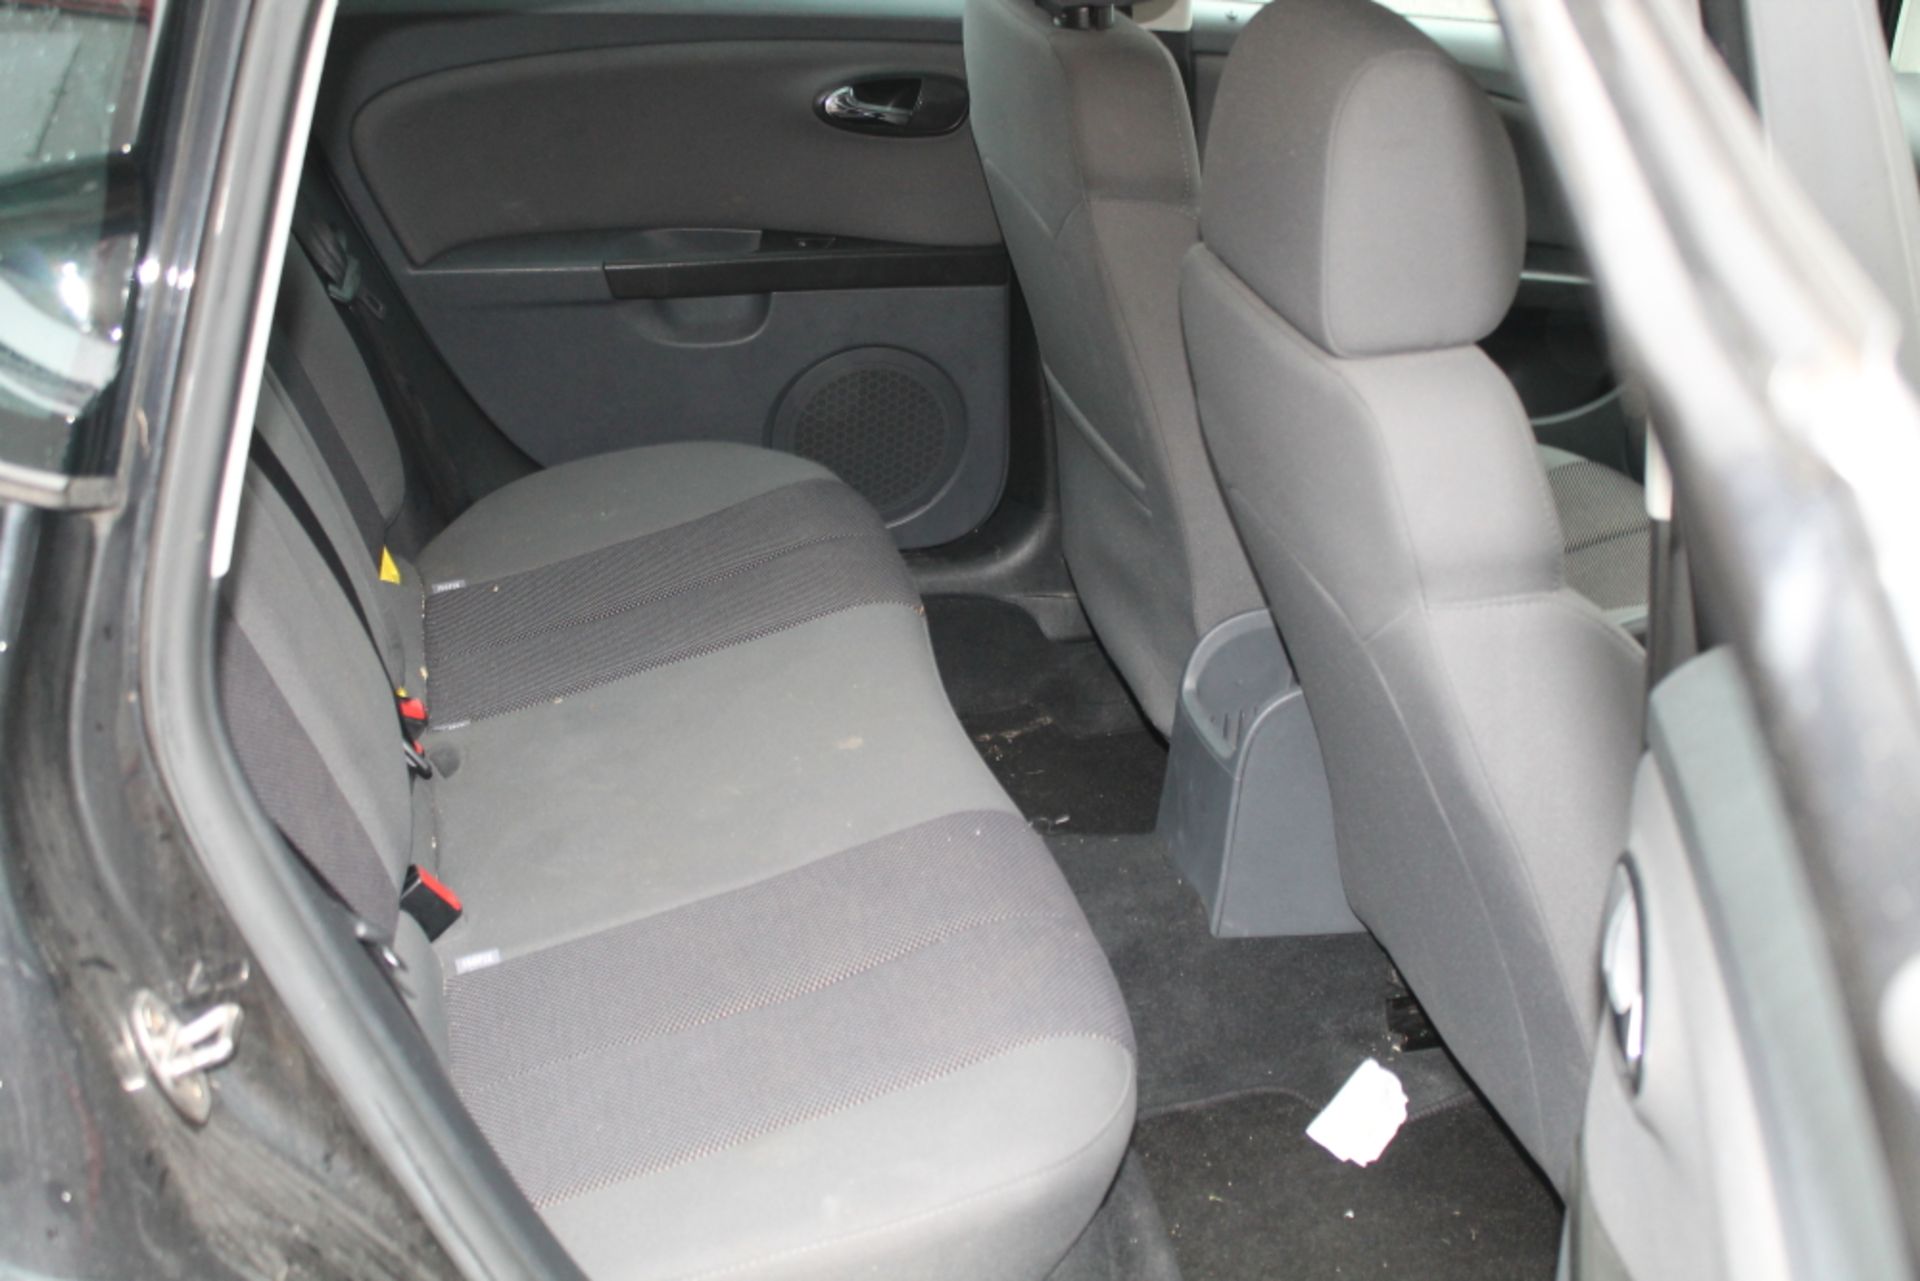 Seat Leon Stylance Tsi - 1390cc 5 Door - Image 7 of 12